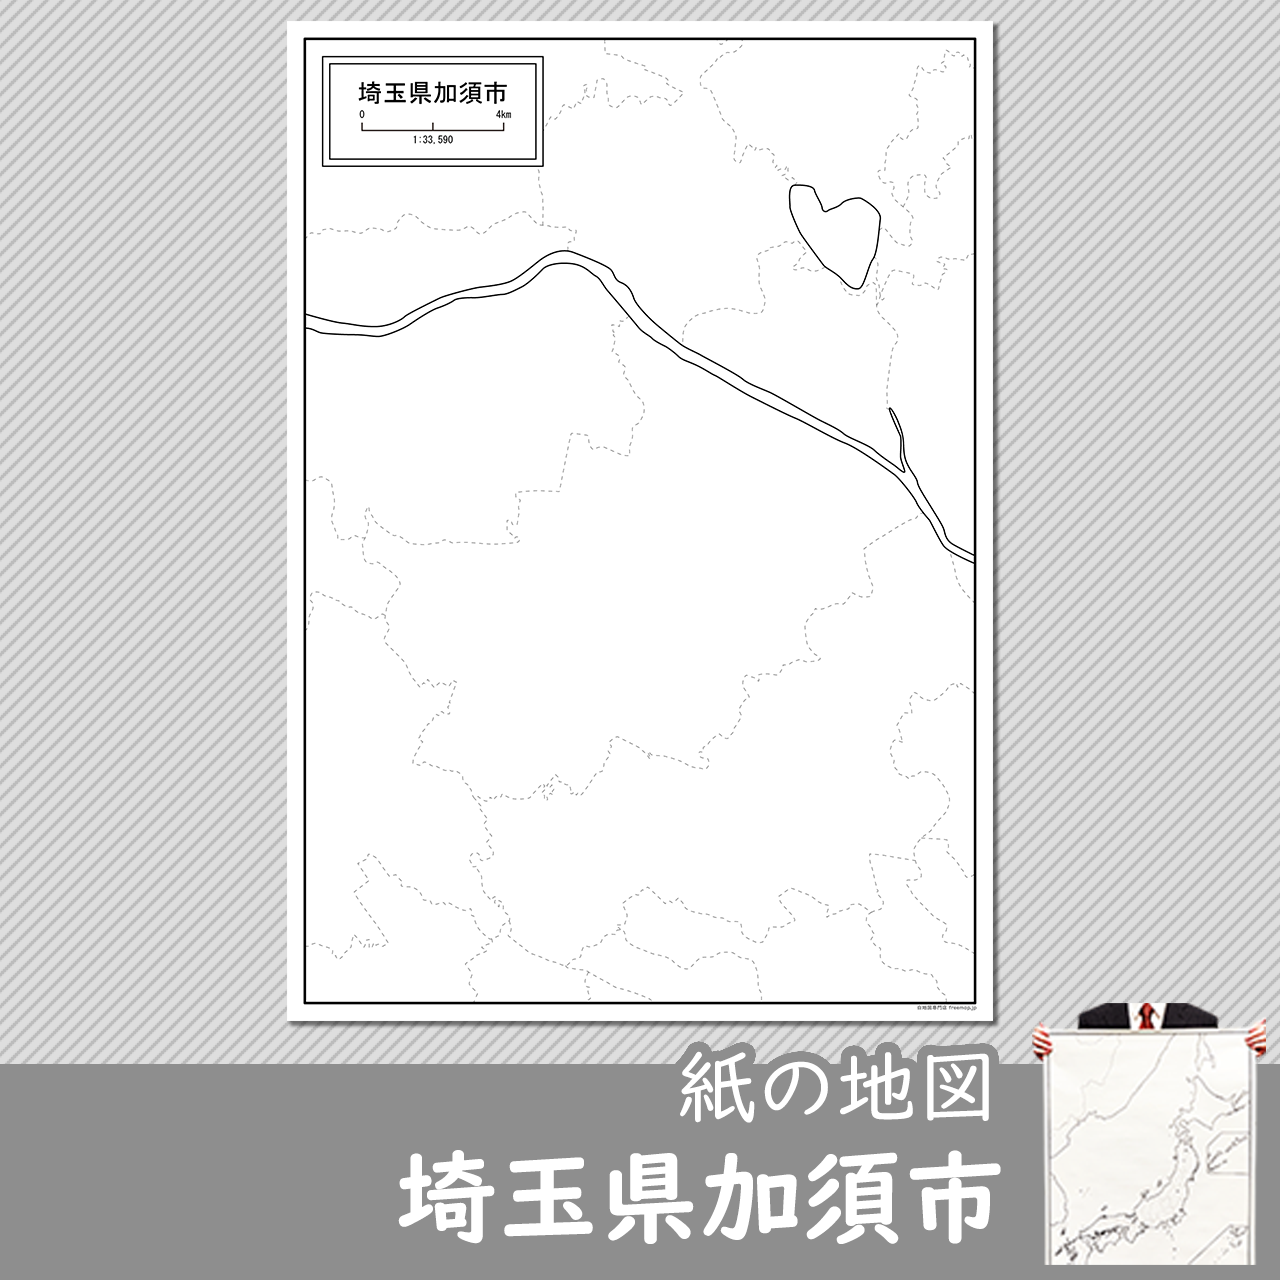 加須市の紙の白地図のサムネイル